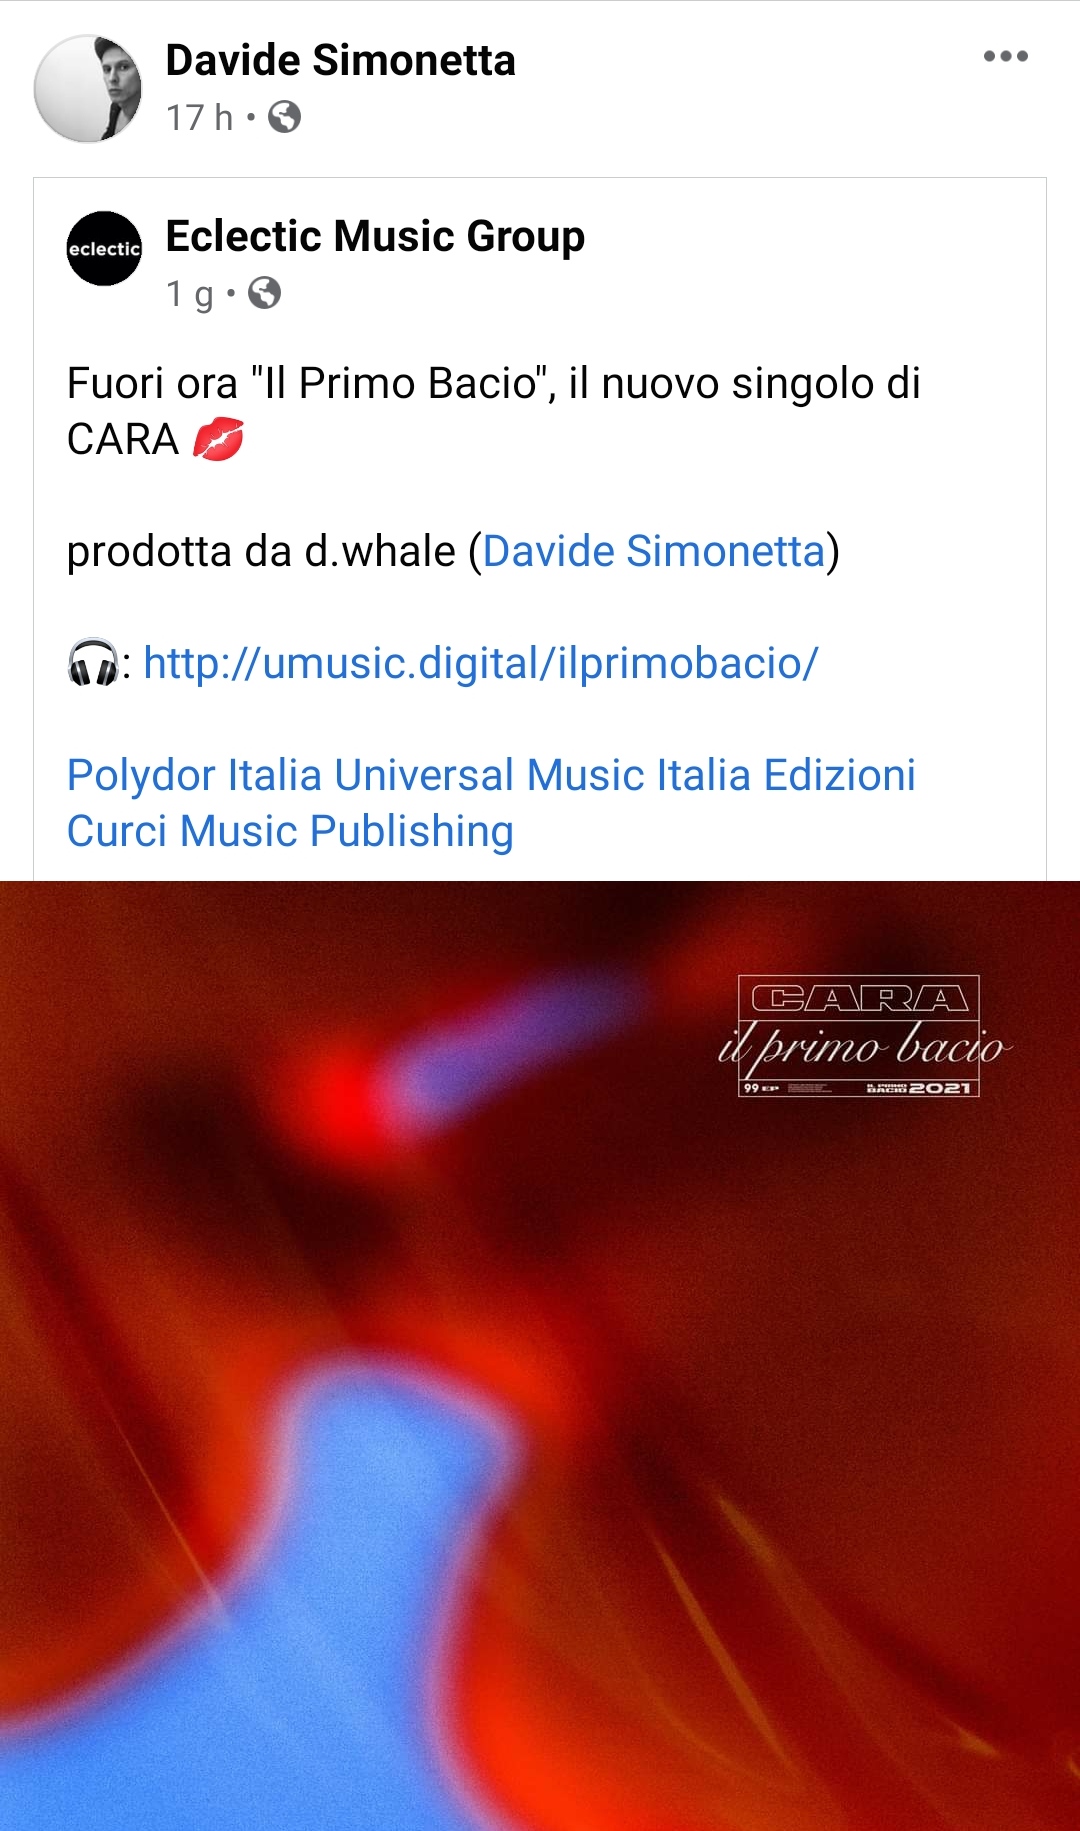 Prodotta da Davide Simonetta (d.whale) esce “Il primo bacio”, il nuovo singolo della cantante (cremasca) CARA. Sarà il pezzo dell’estate 2021?